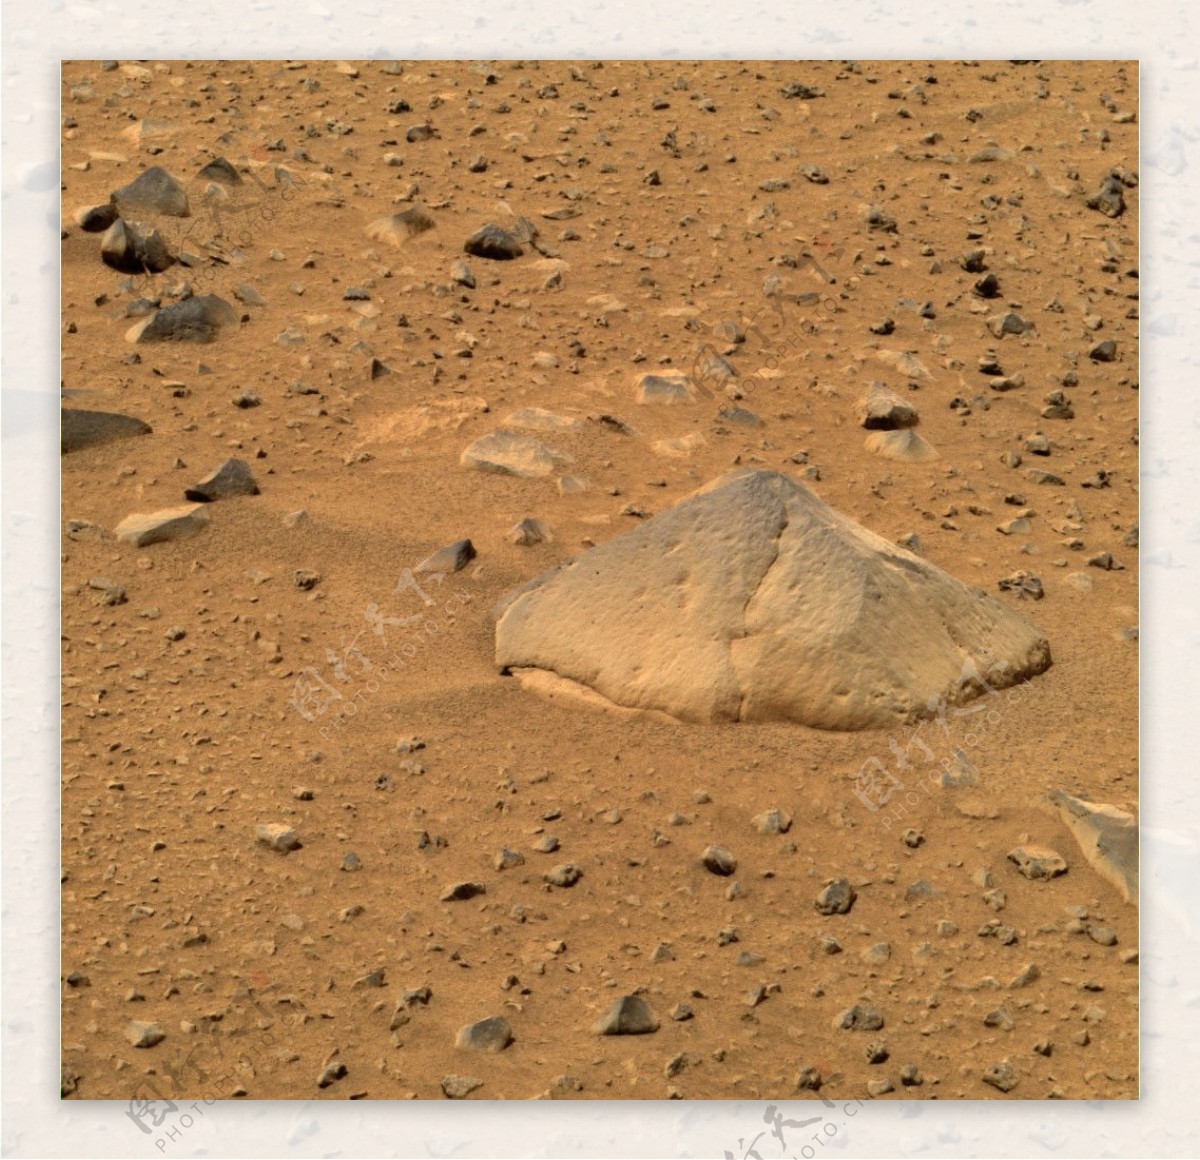 火星登录车发回地球的高清火星图片6